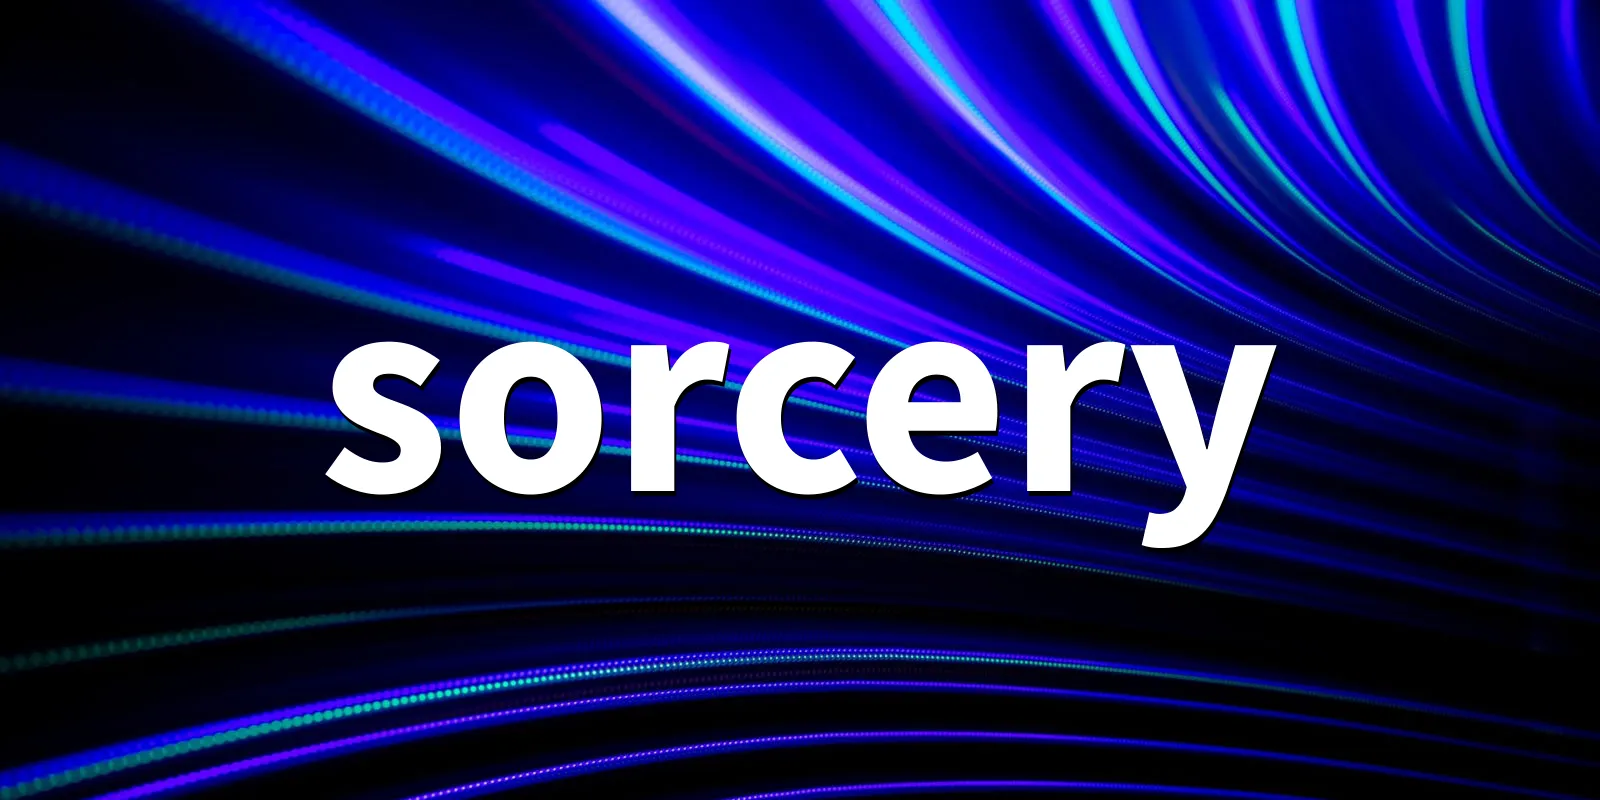 /pkg/s/sorcery/sorcery-banner.webp